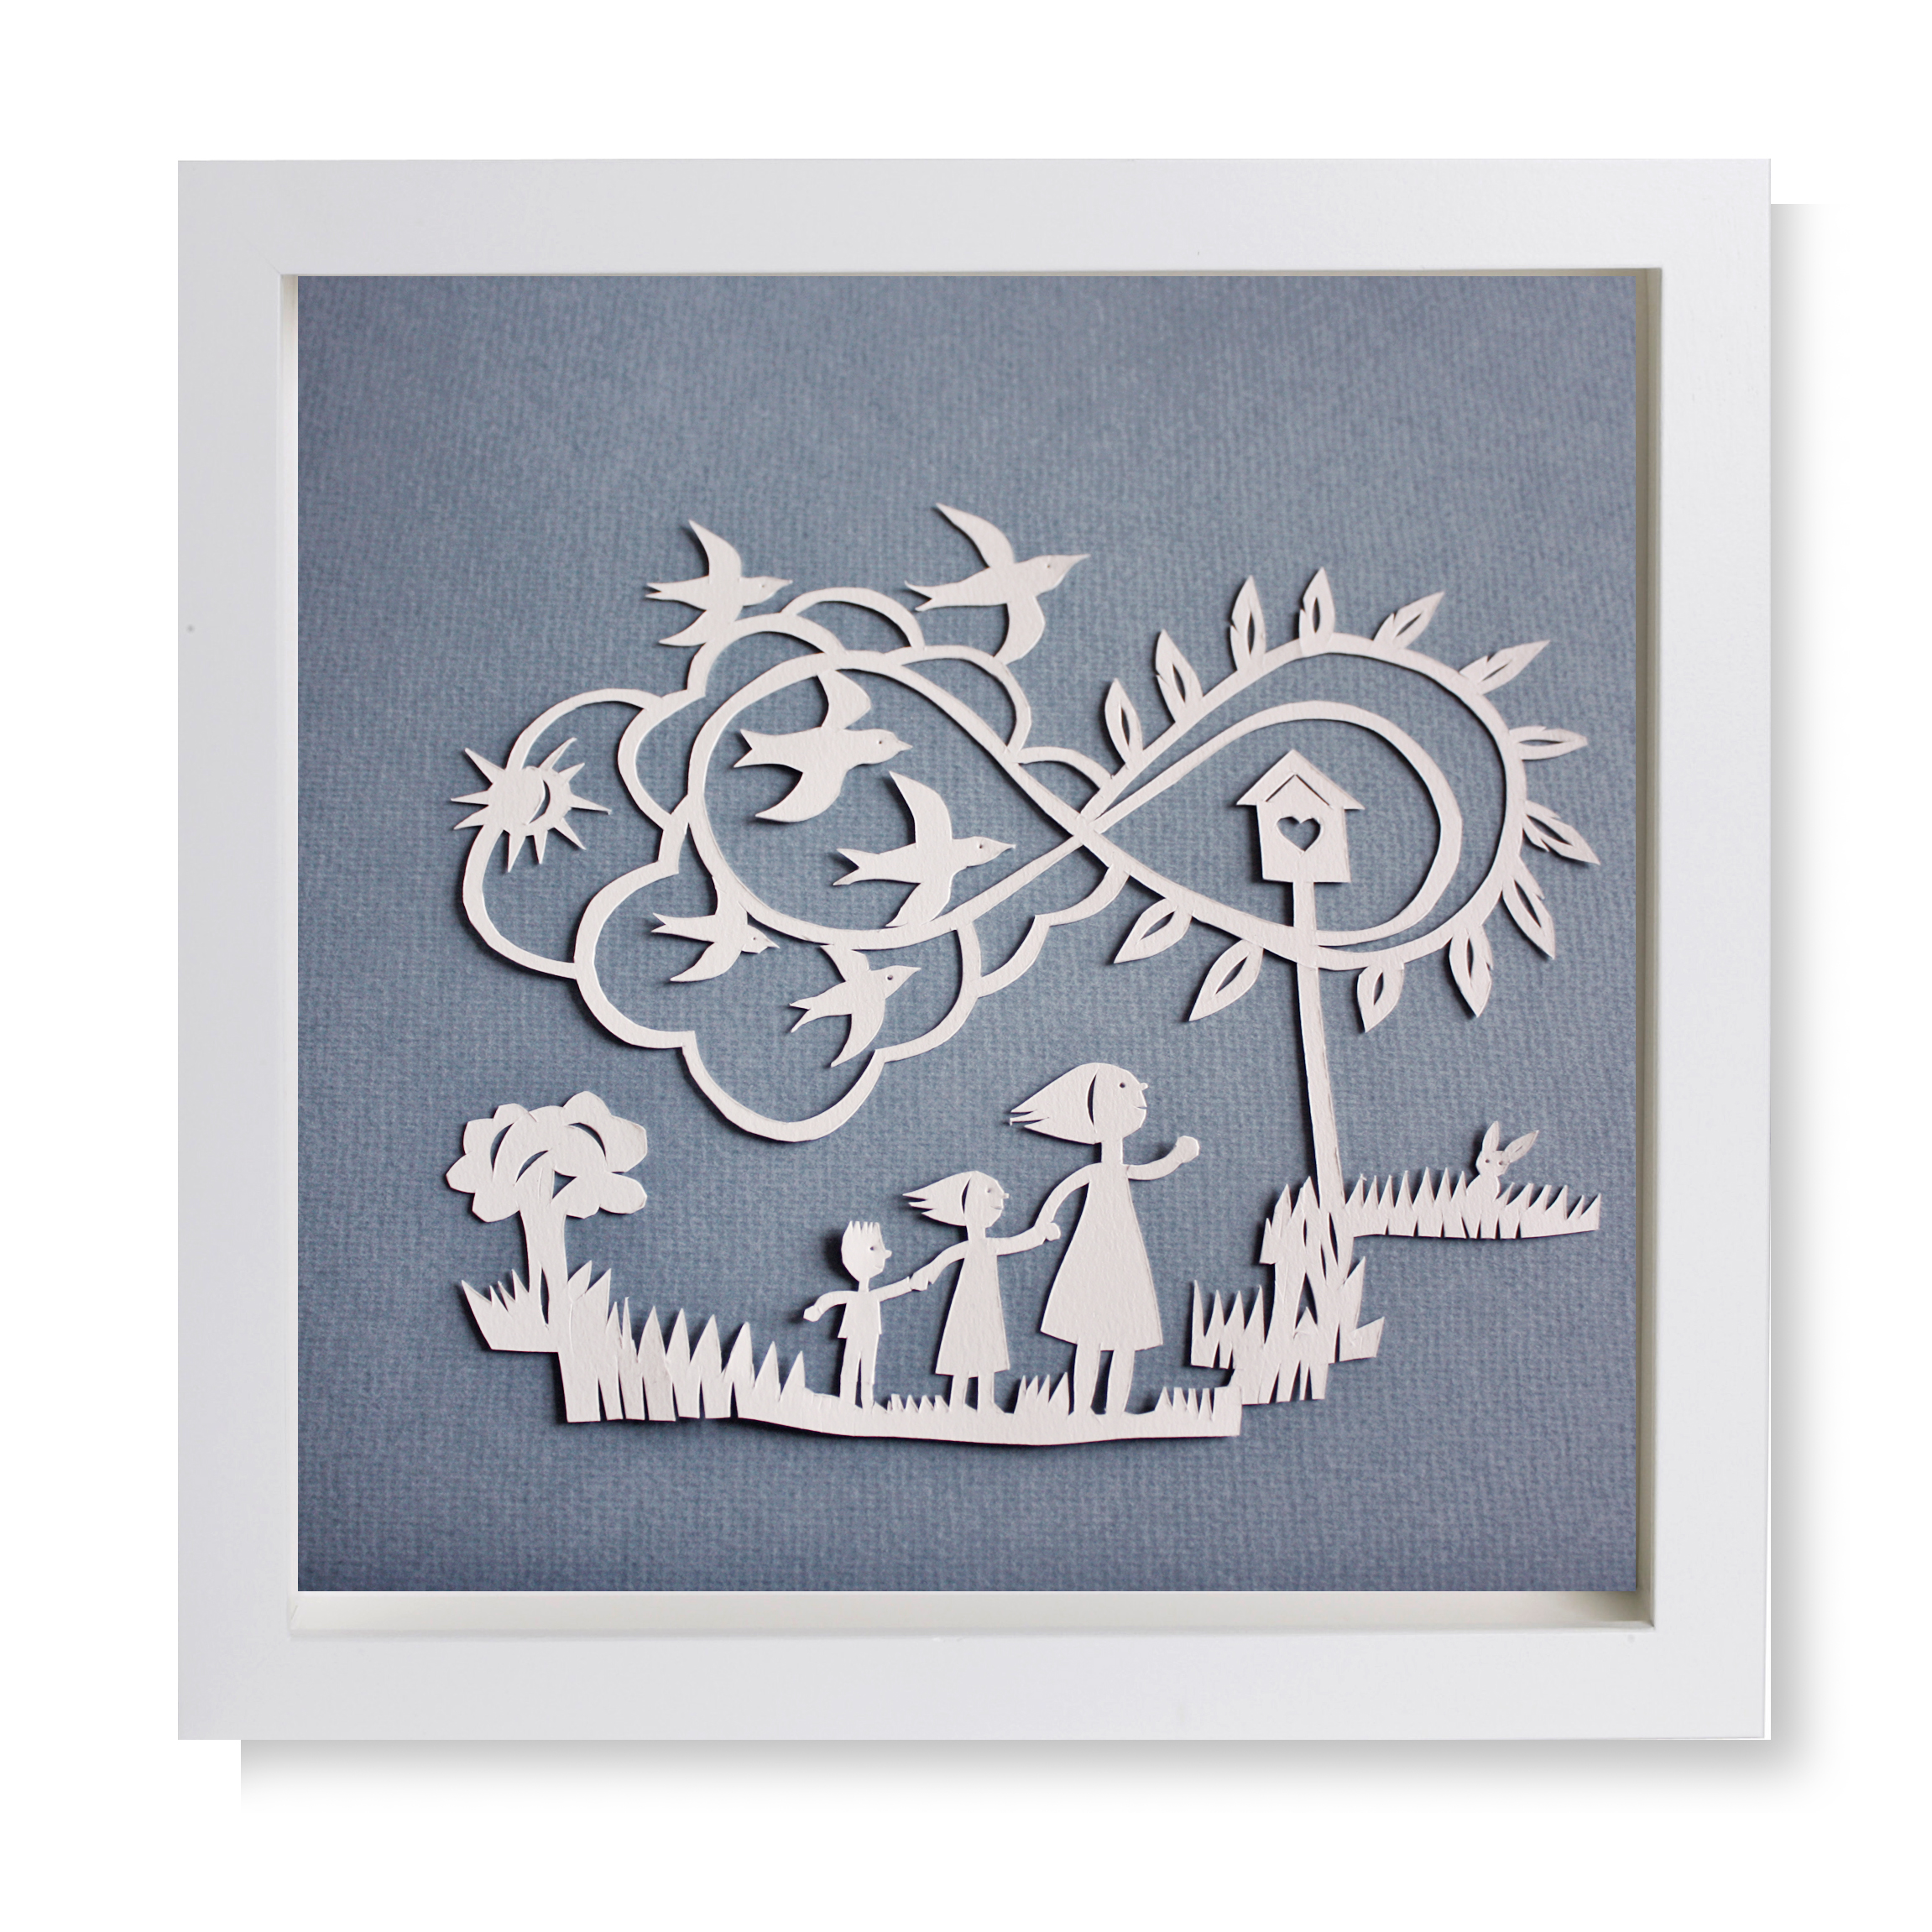 Quadro com Ilustração em papercut de mãe e crianças a olhar para andorinhas no infinito.